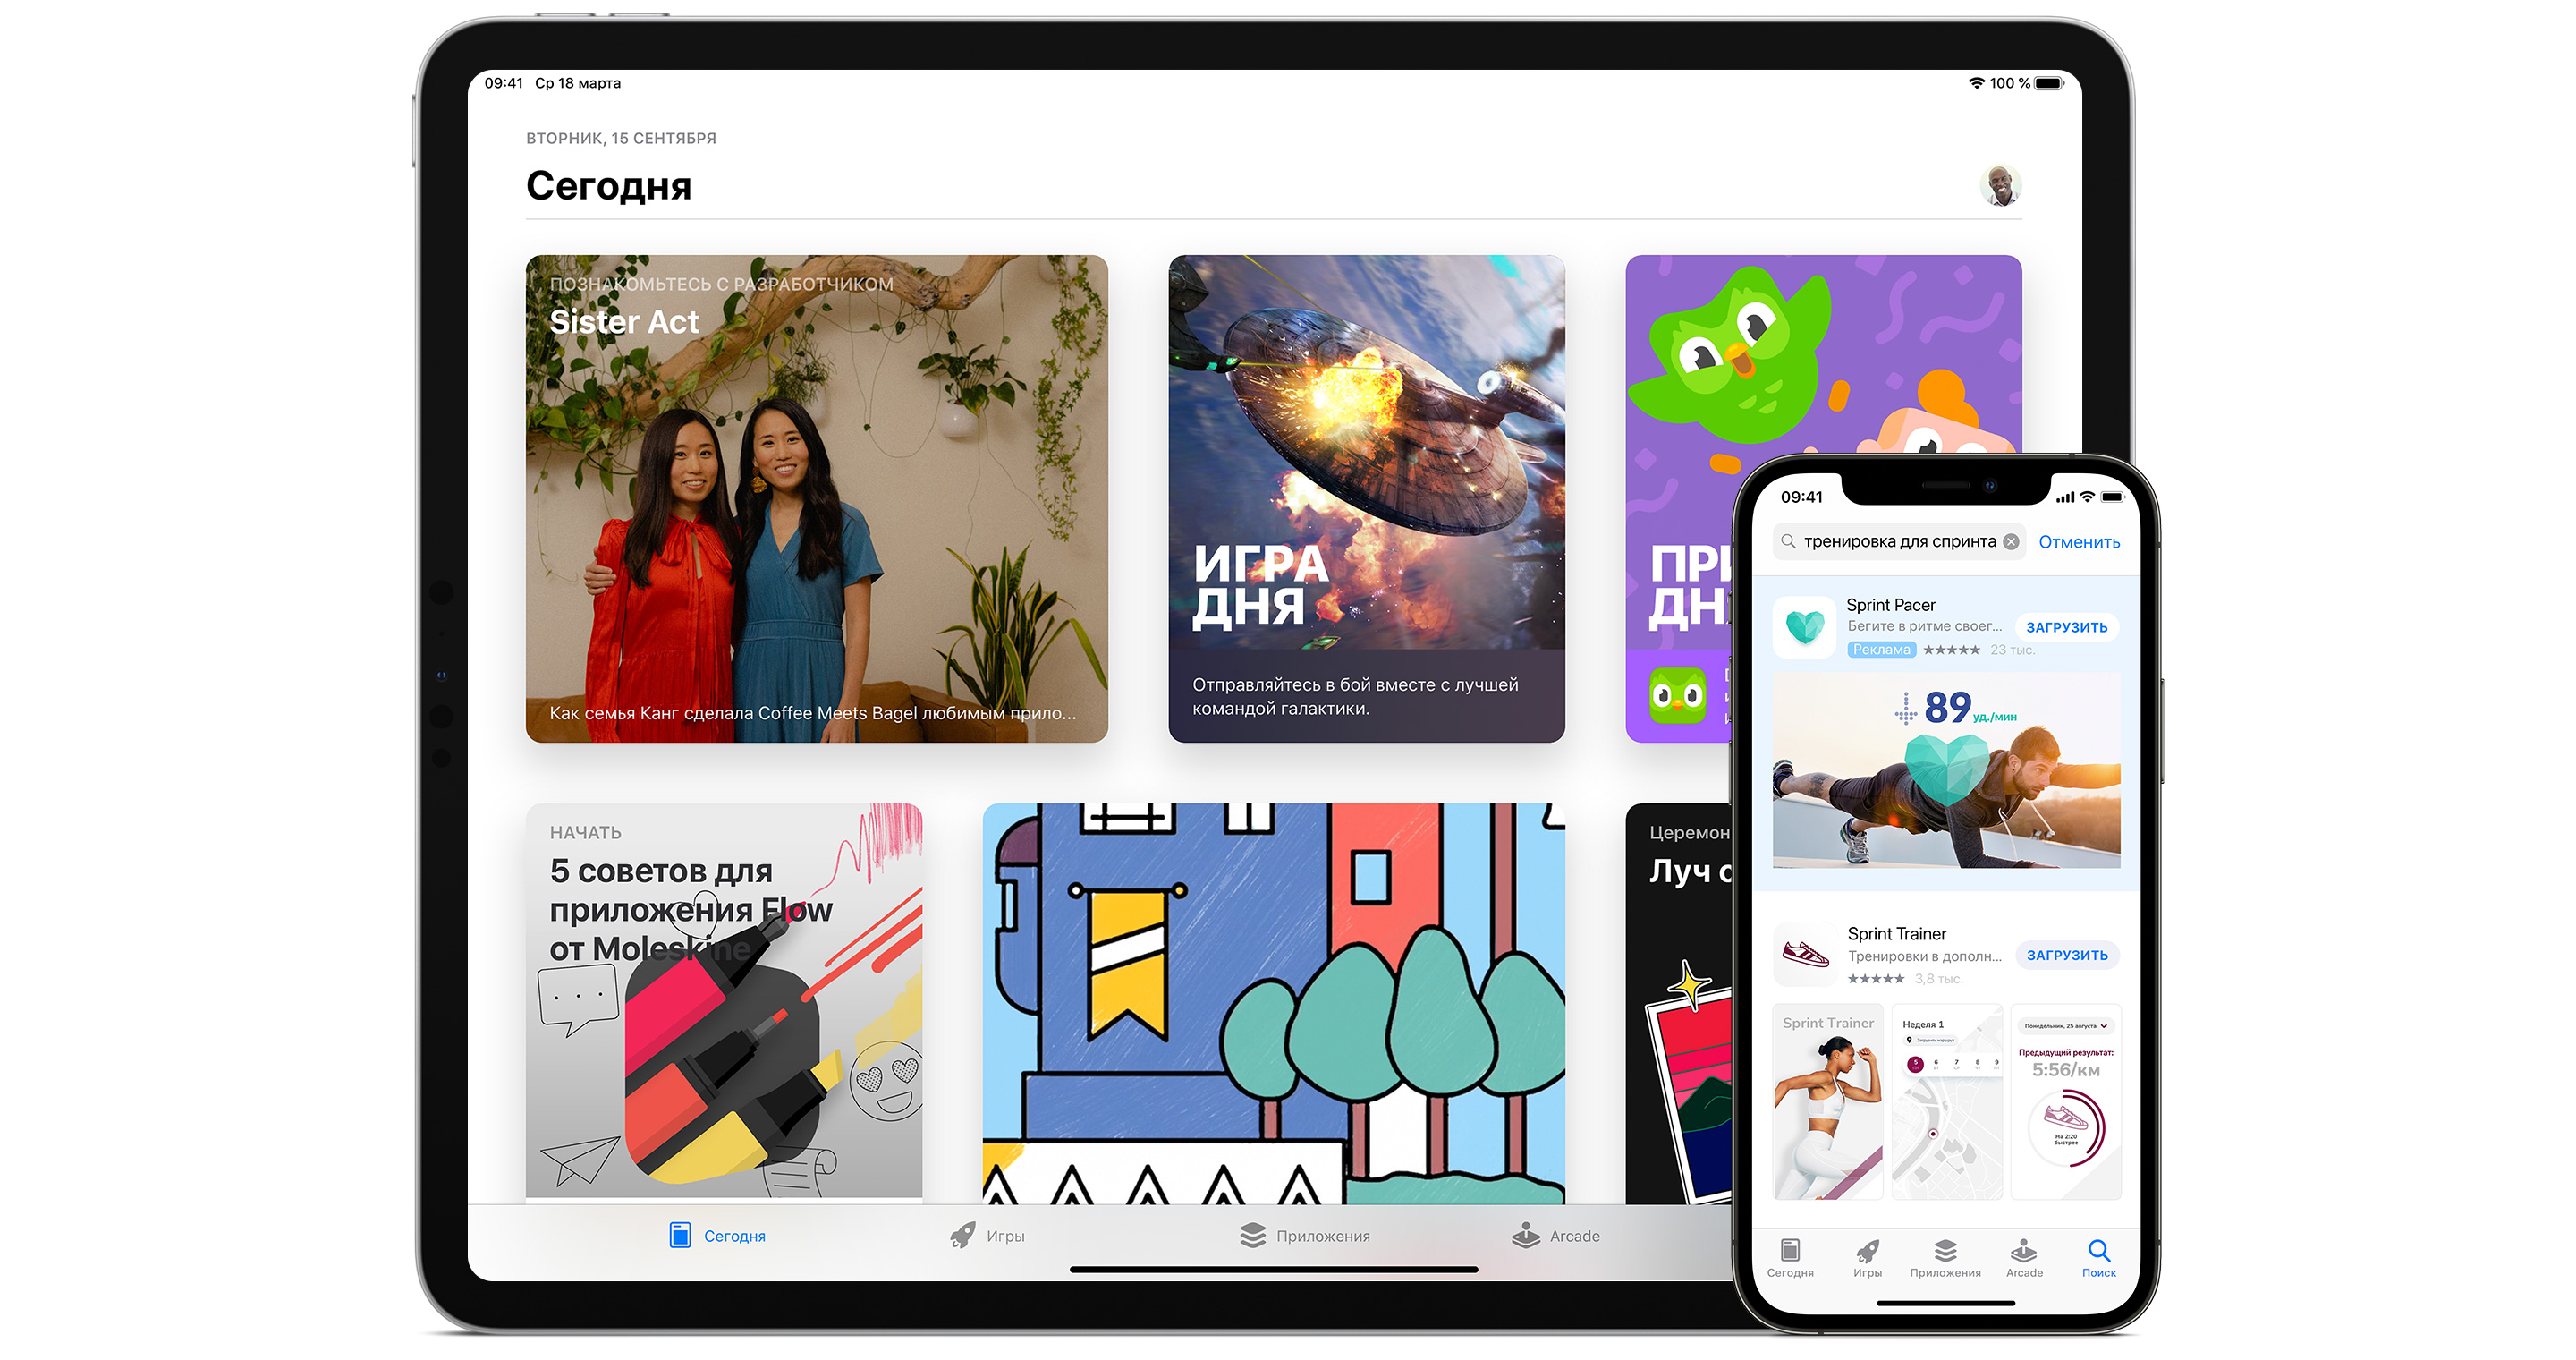 Вкладка «Сегодня» в App Store и реклама приложения Sprint Pacer в результатах поиска в App Store